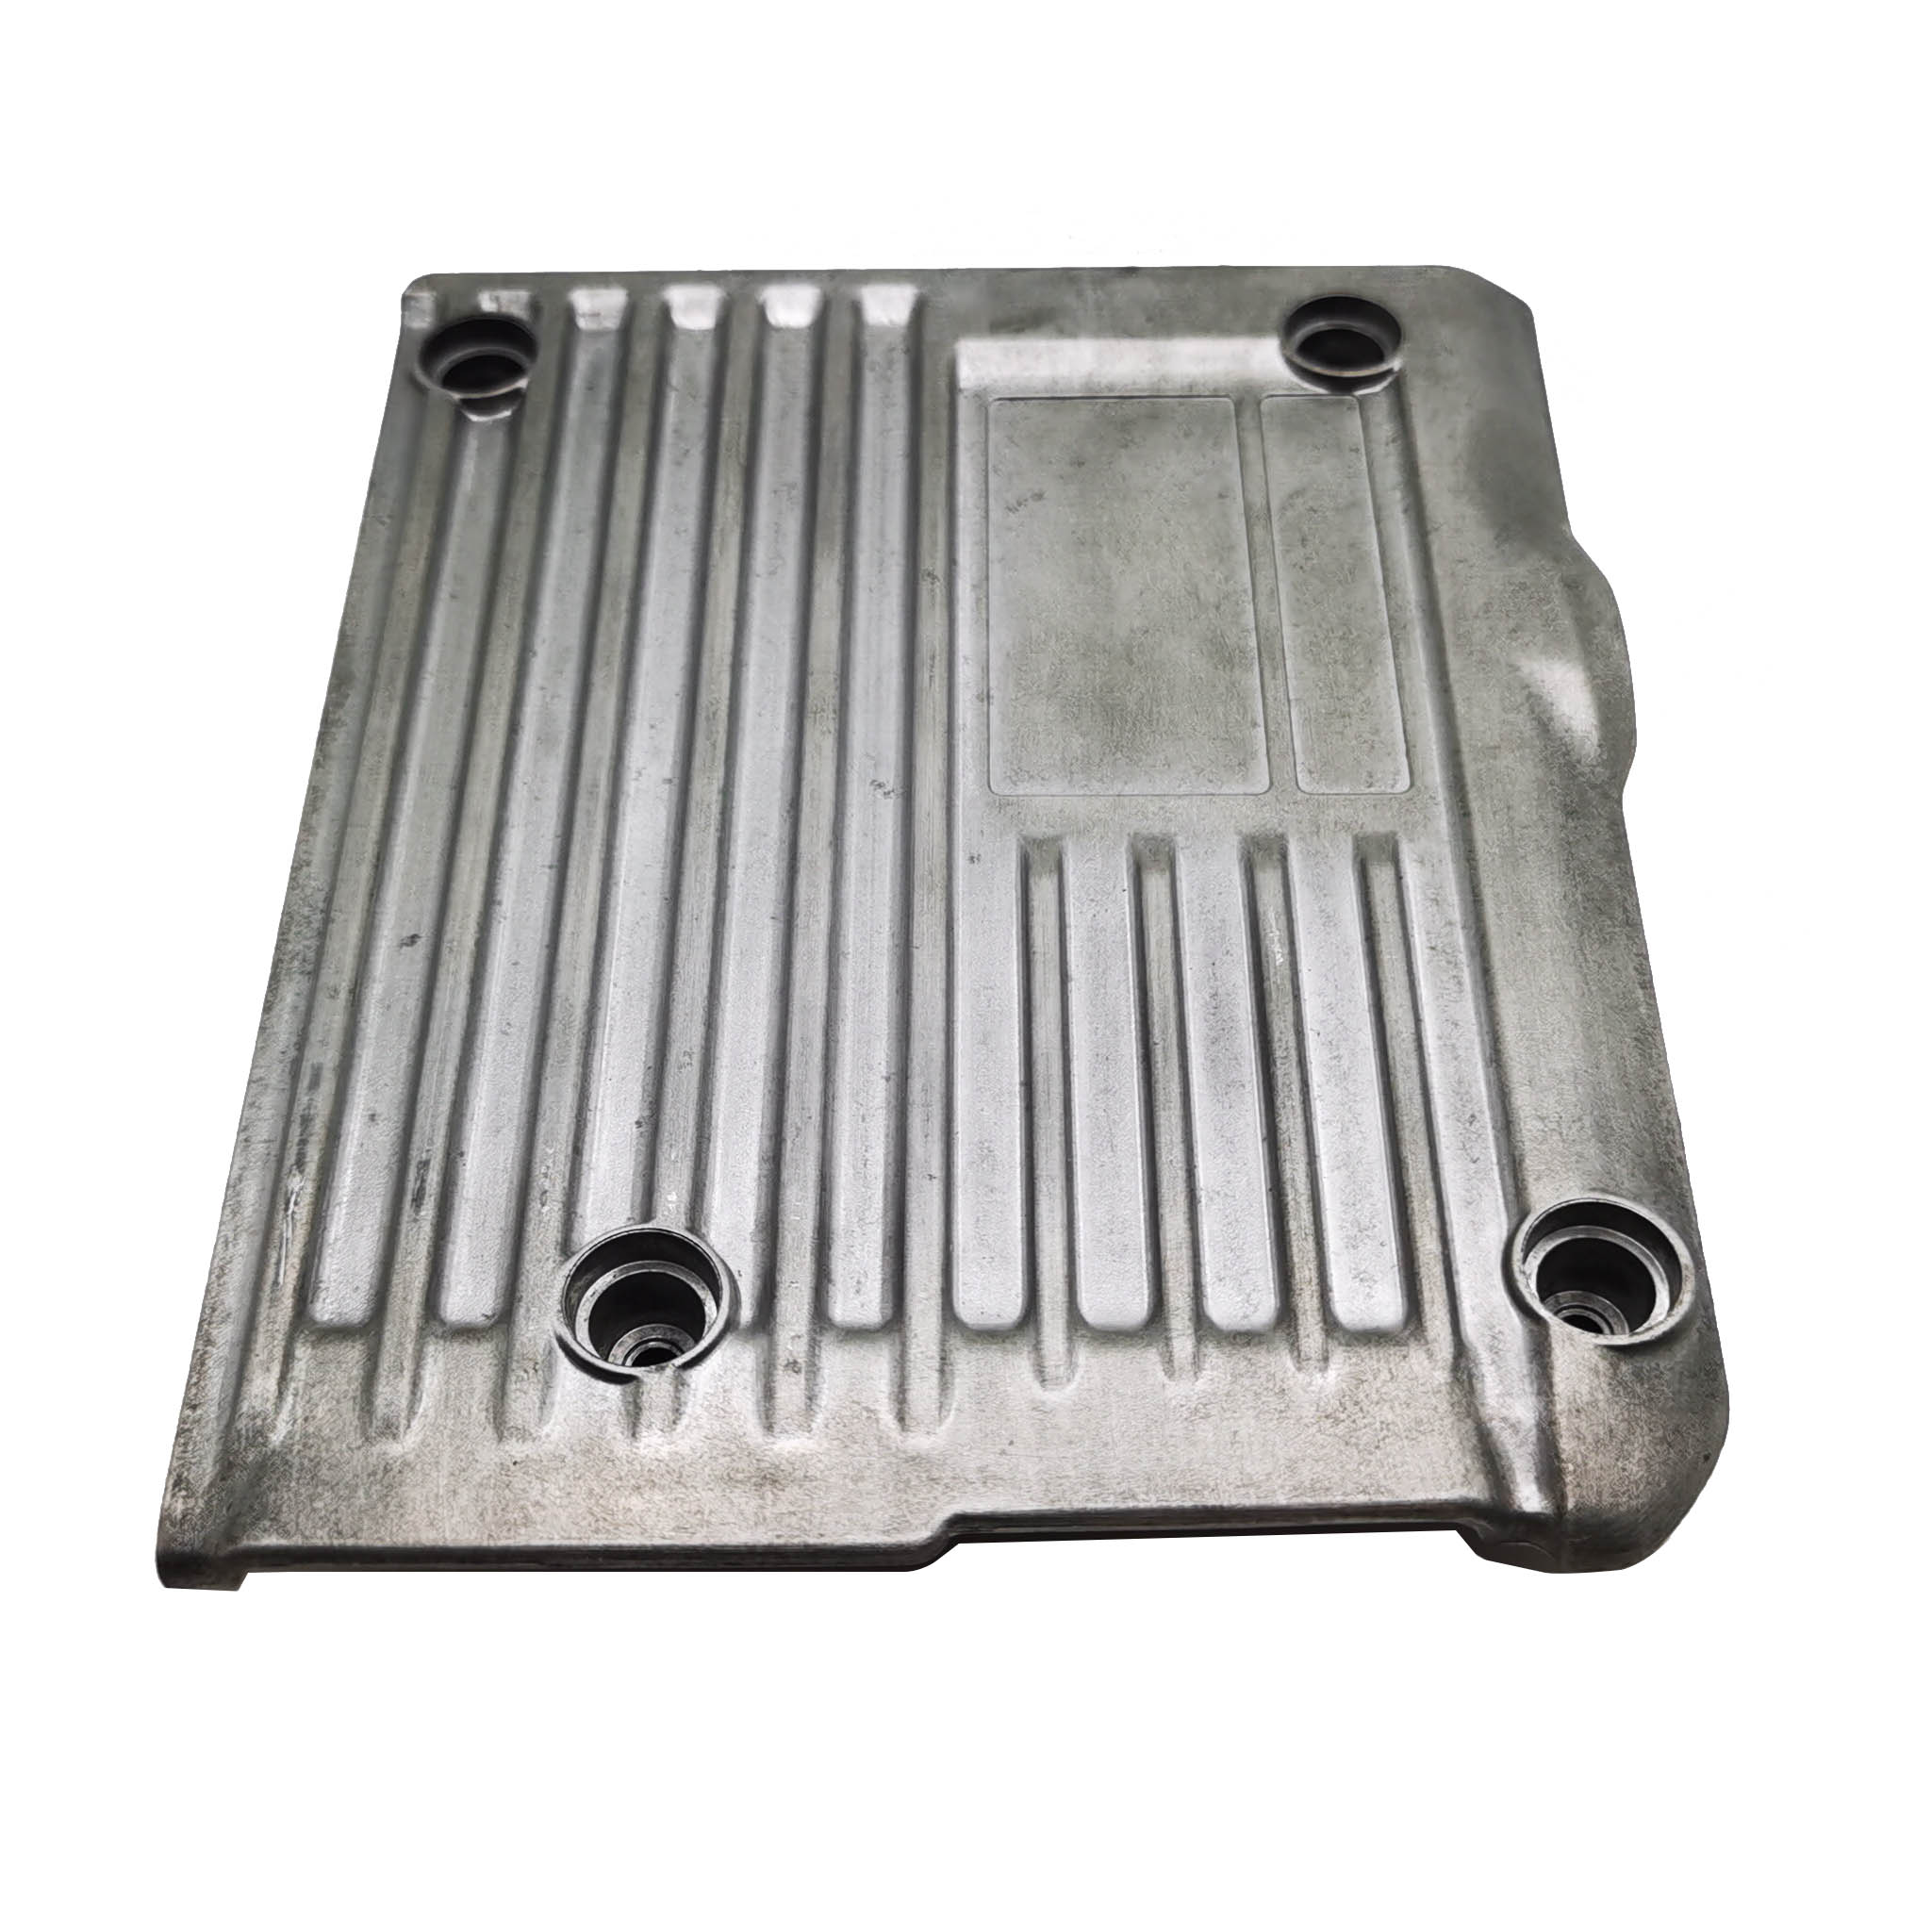 Indywidualny, wysokiej jakości odlew ciśnieniowy ze stopu aluminium, komponent metalowy, dostosowany do indywidualnych potrzeb ze stopu cynku